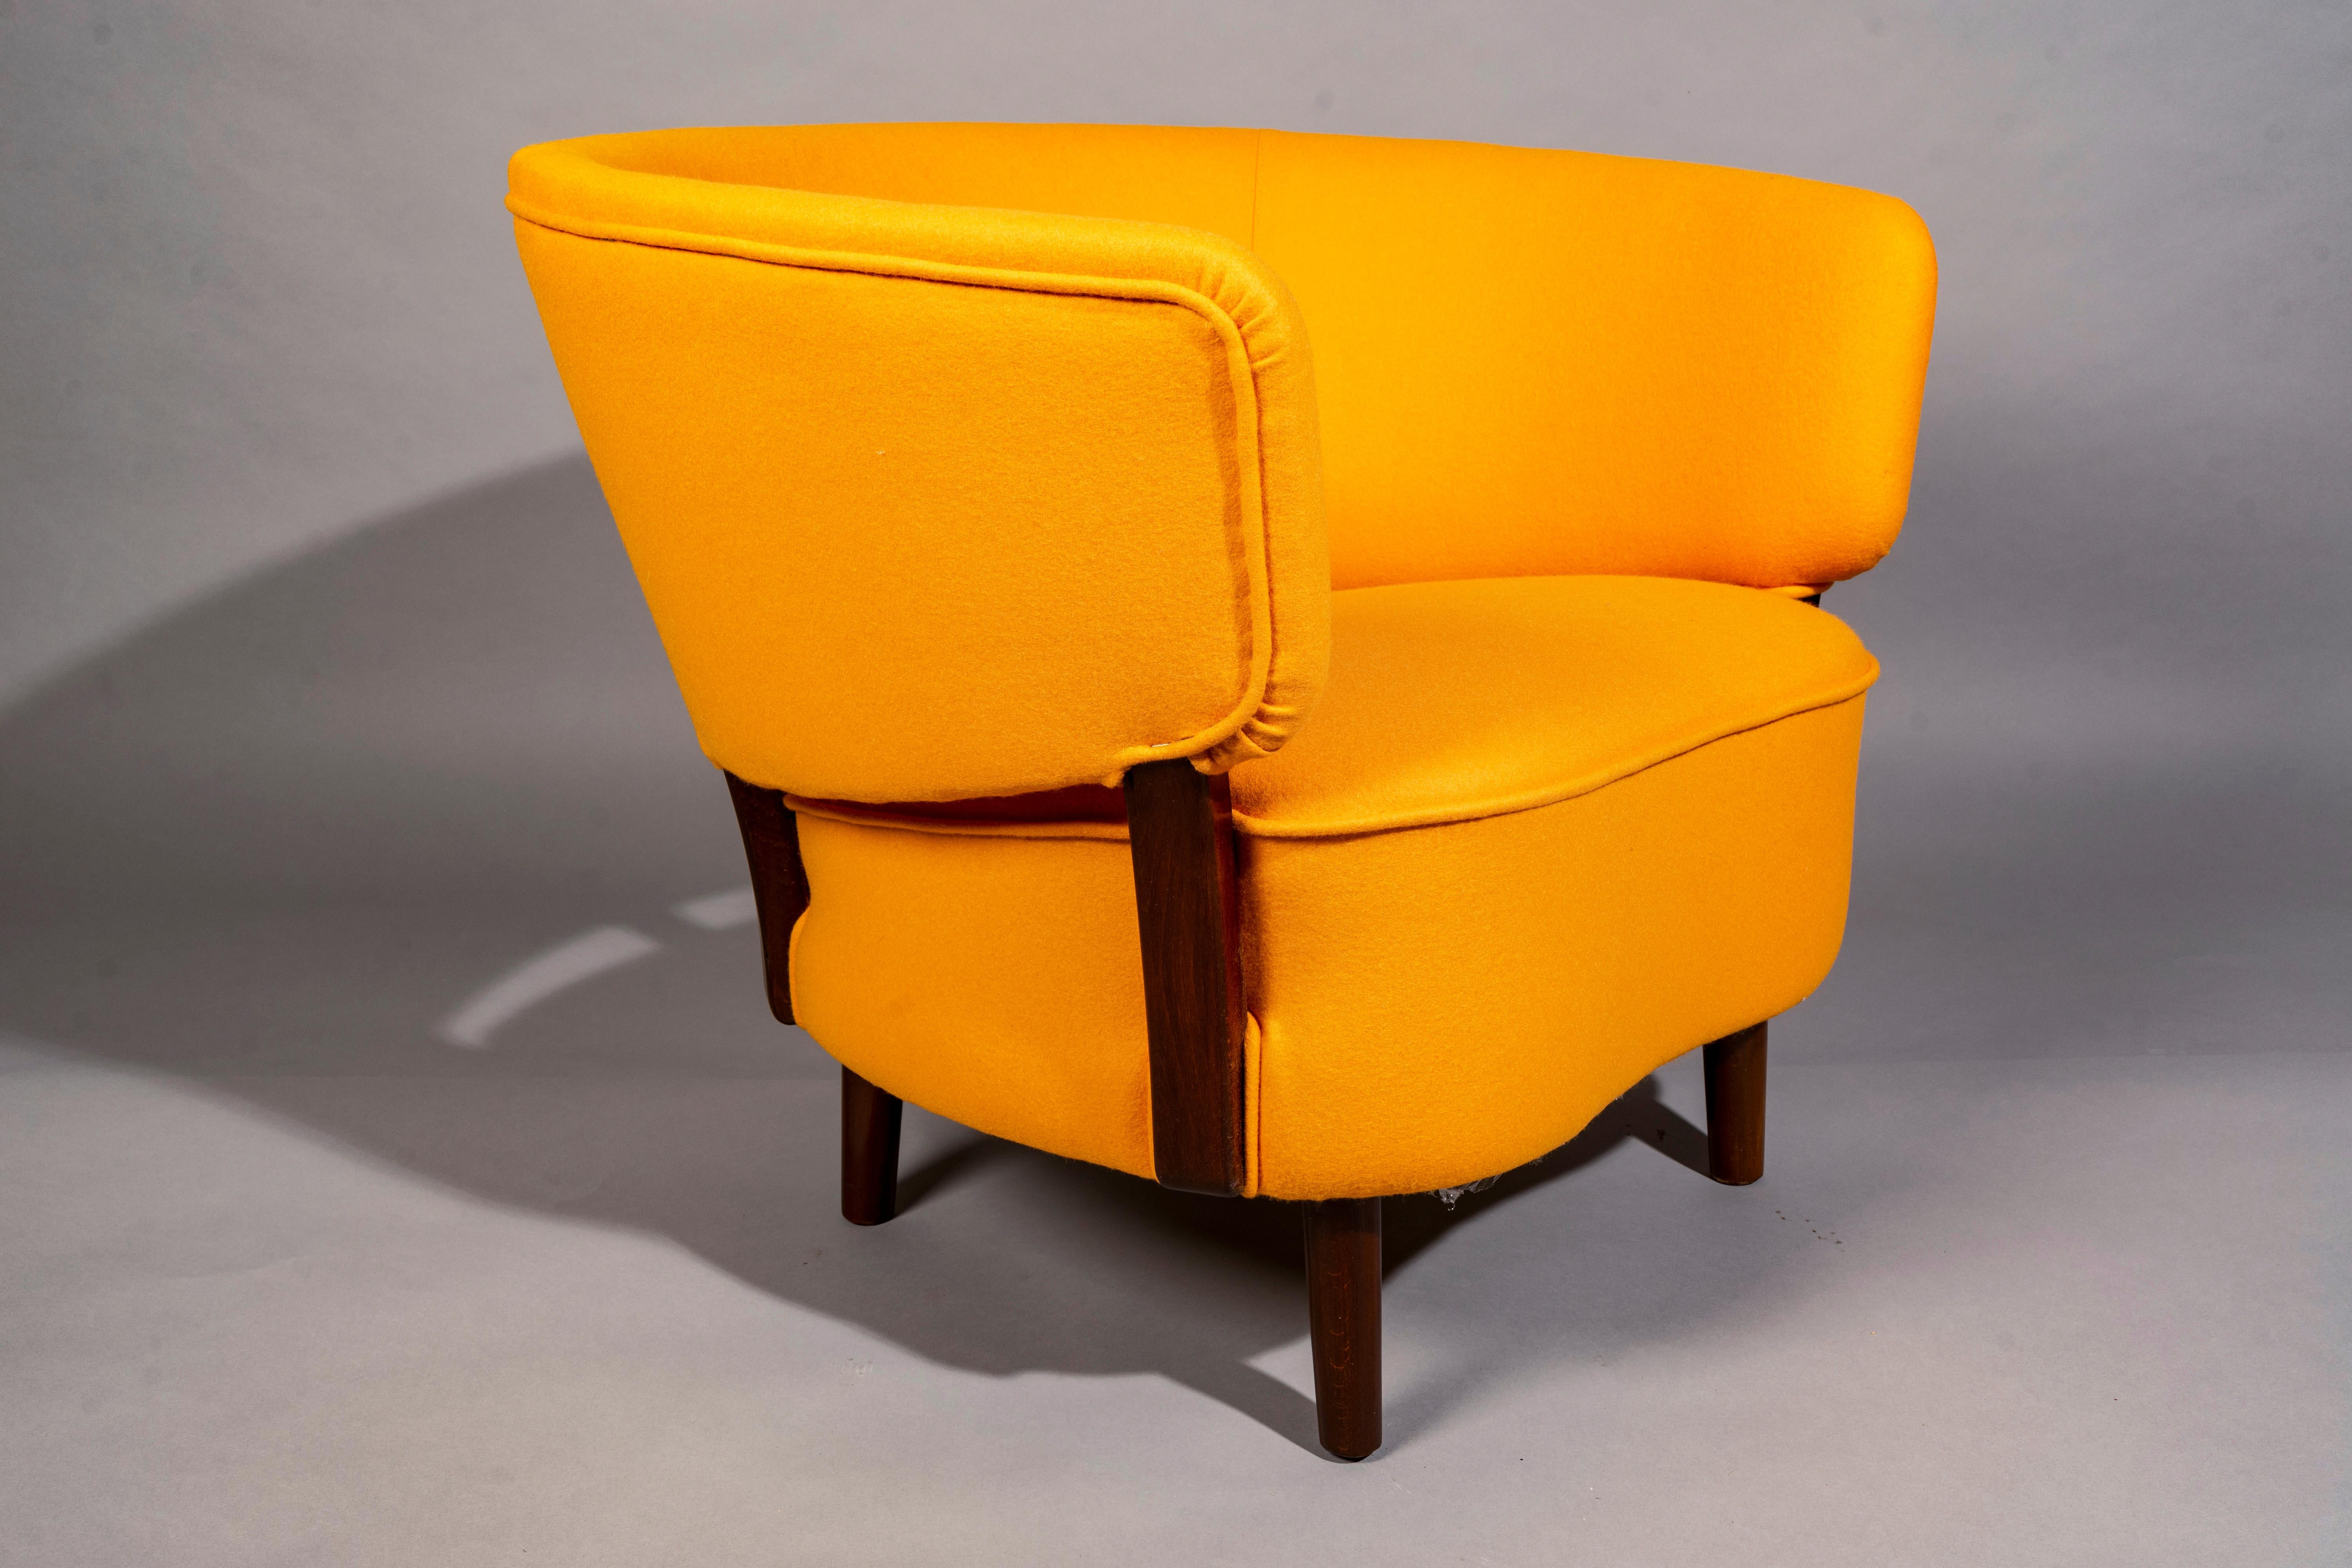 Sessel mit schwebender Rückenlehne von Aage Sattrup für Maker Sattrups Polstermøbelfabrik, Dänemark 1950er Jahre, Buche gebeizt, gepolstert mit Dominique Kieffer Wolle.